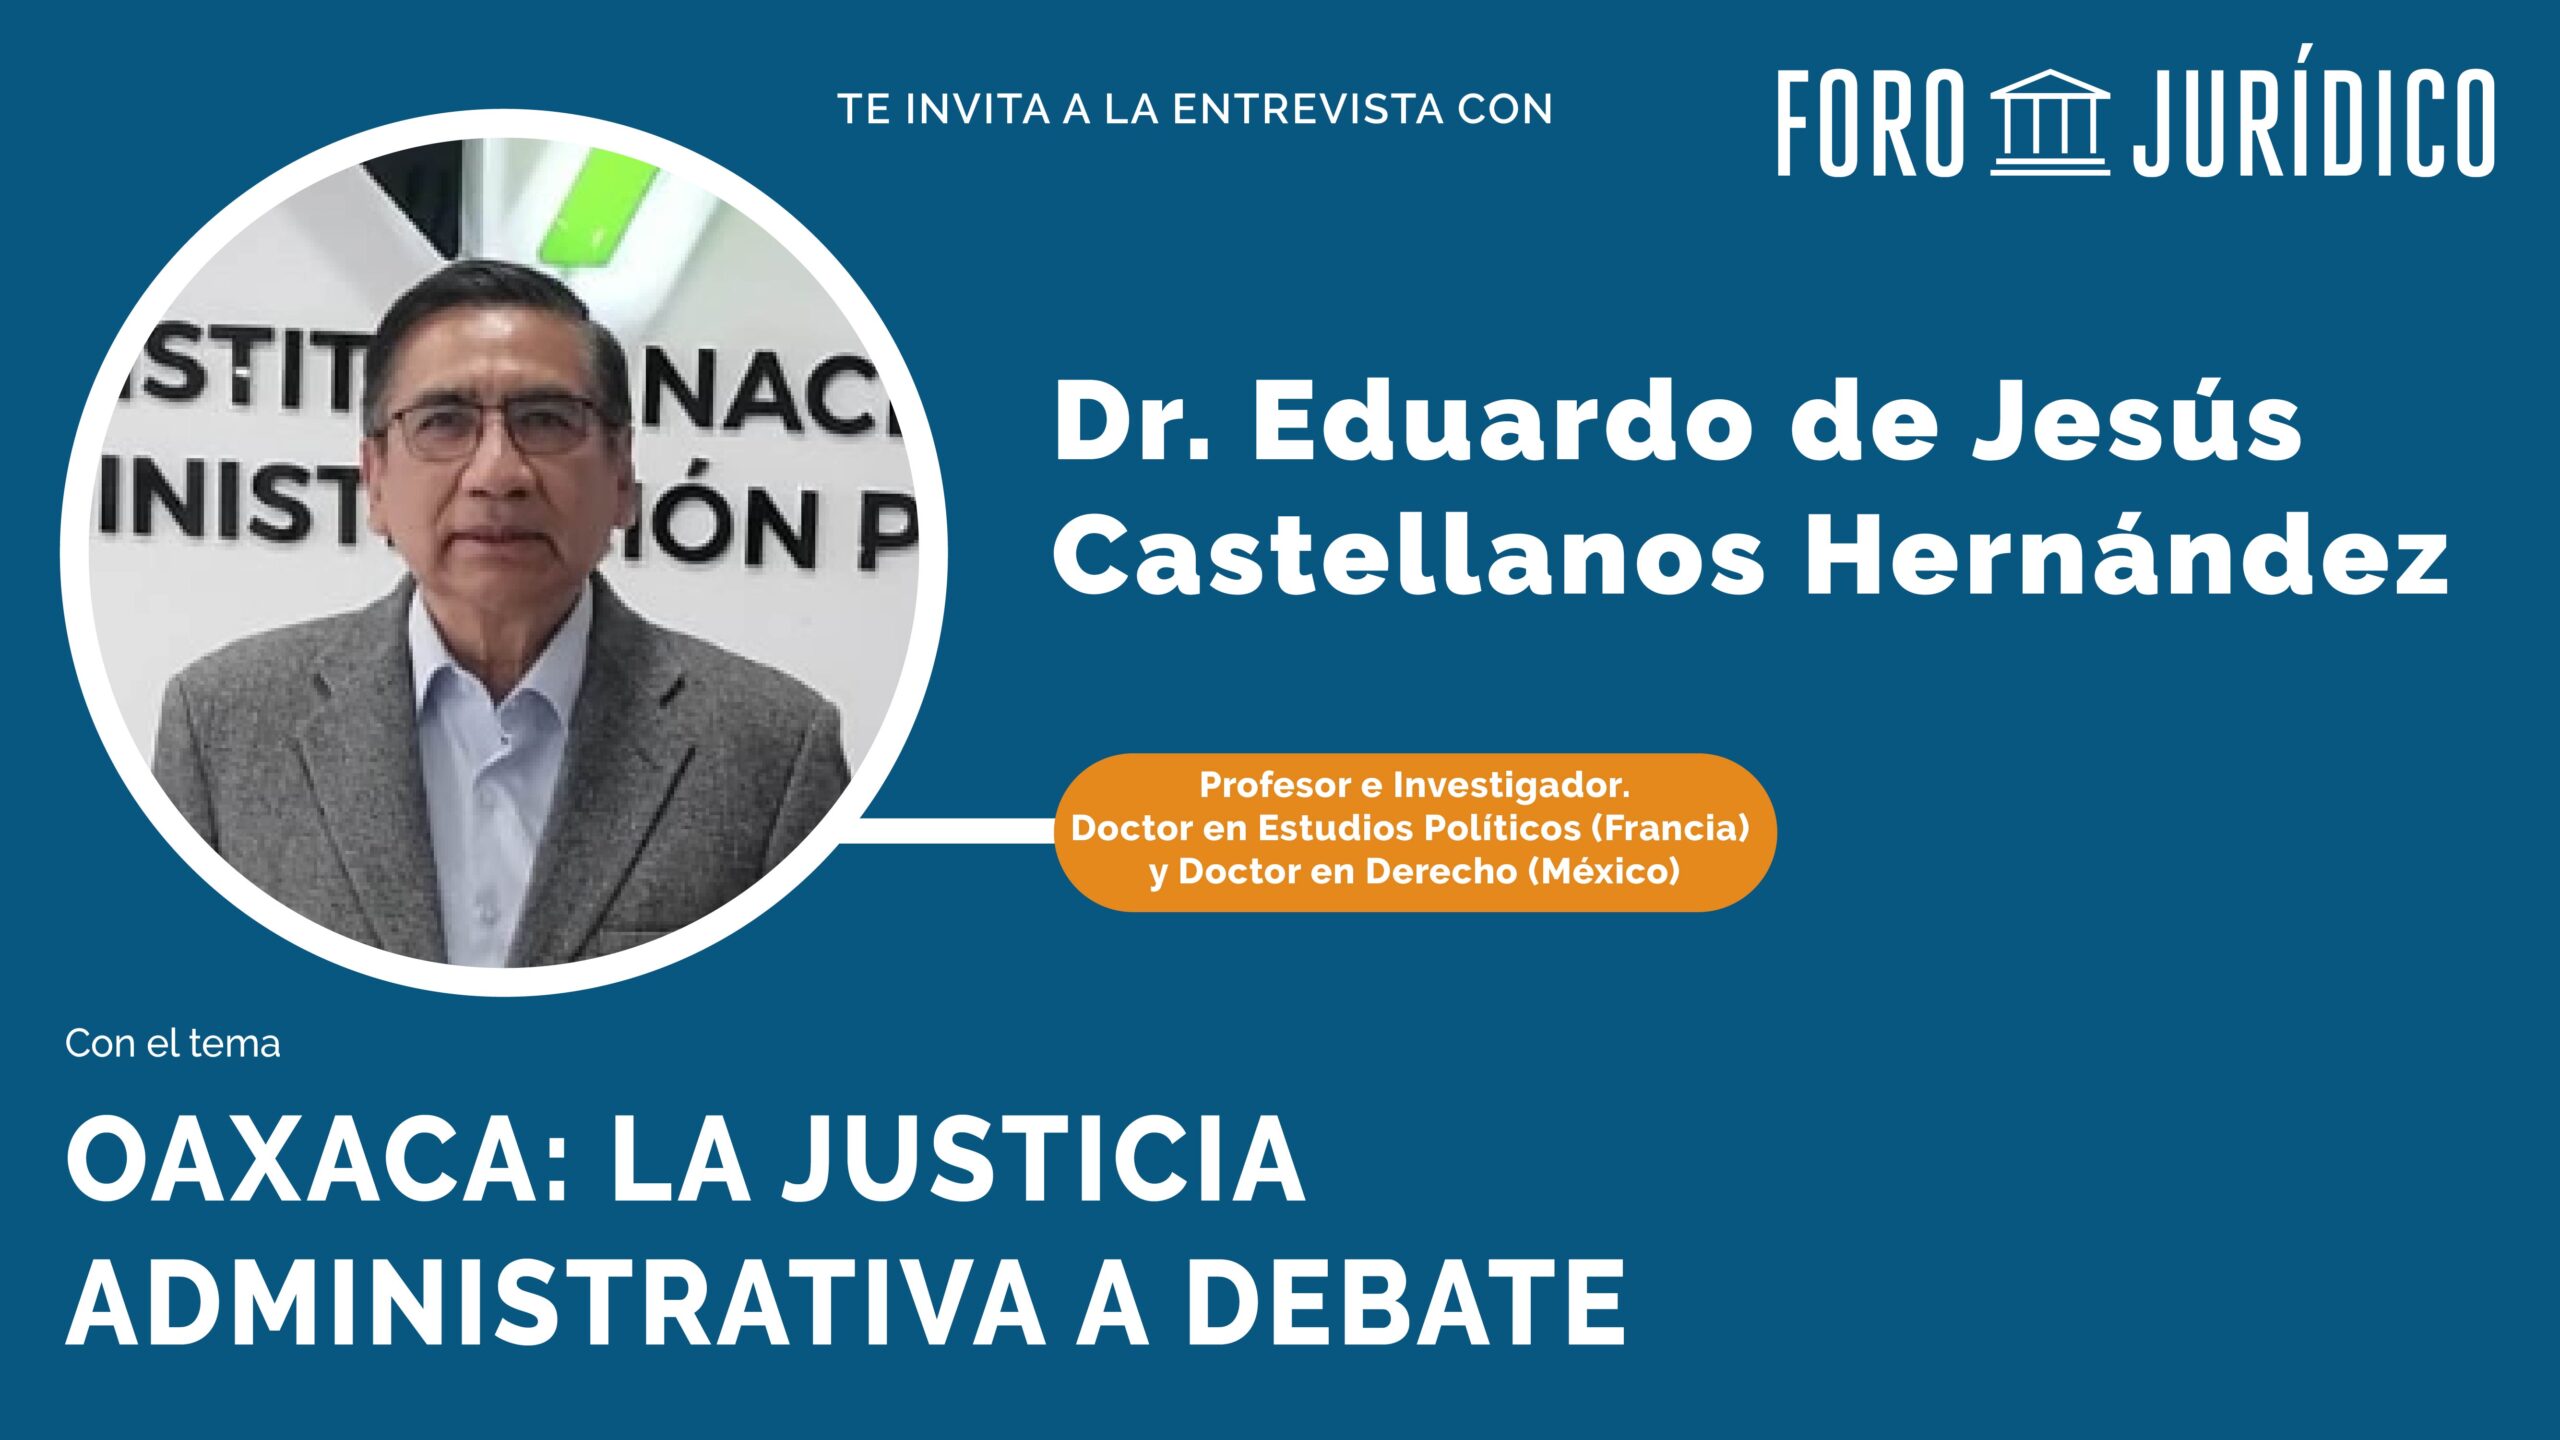 foro jurídico entrevista con Eduardo Castellanos